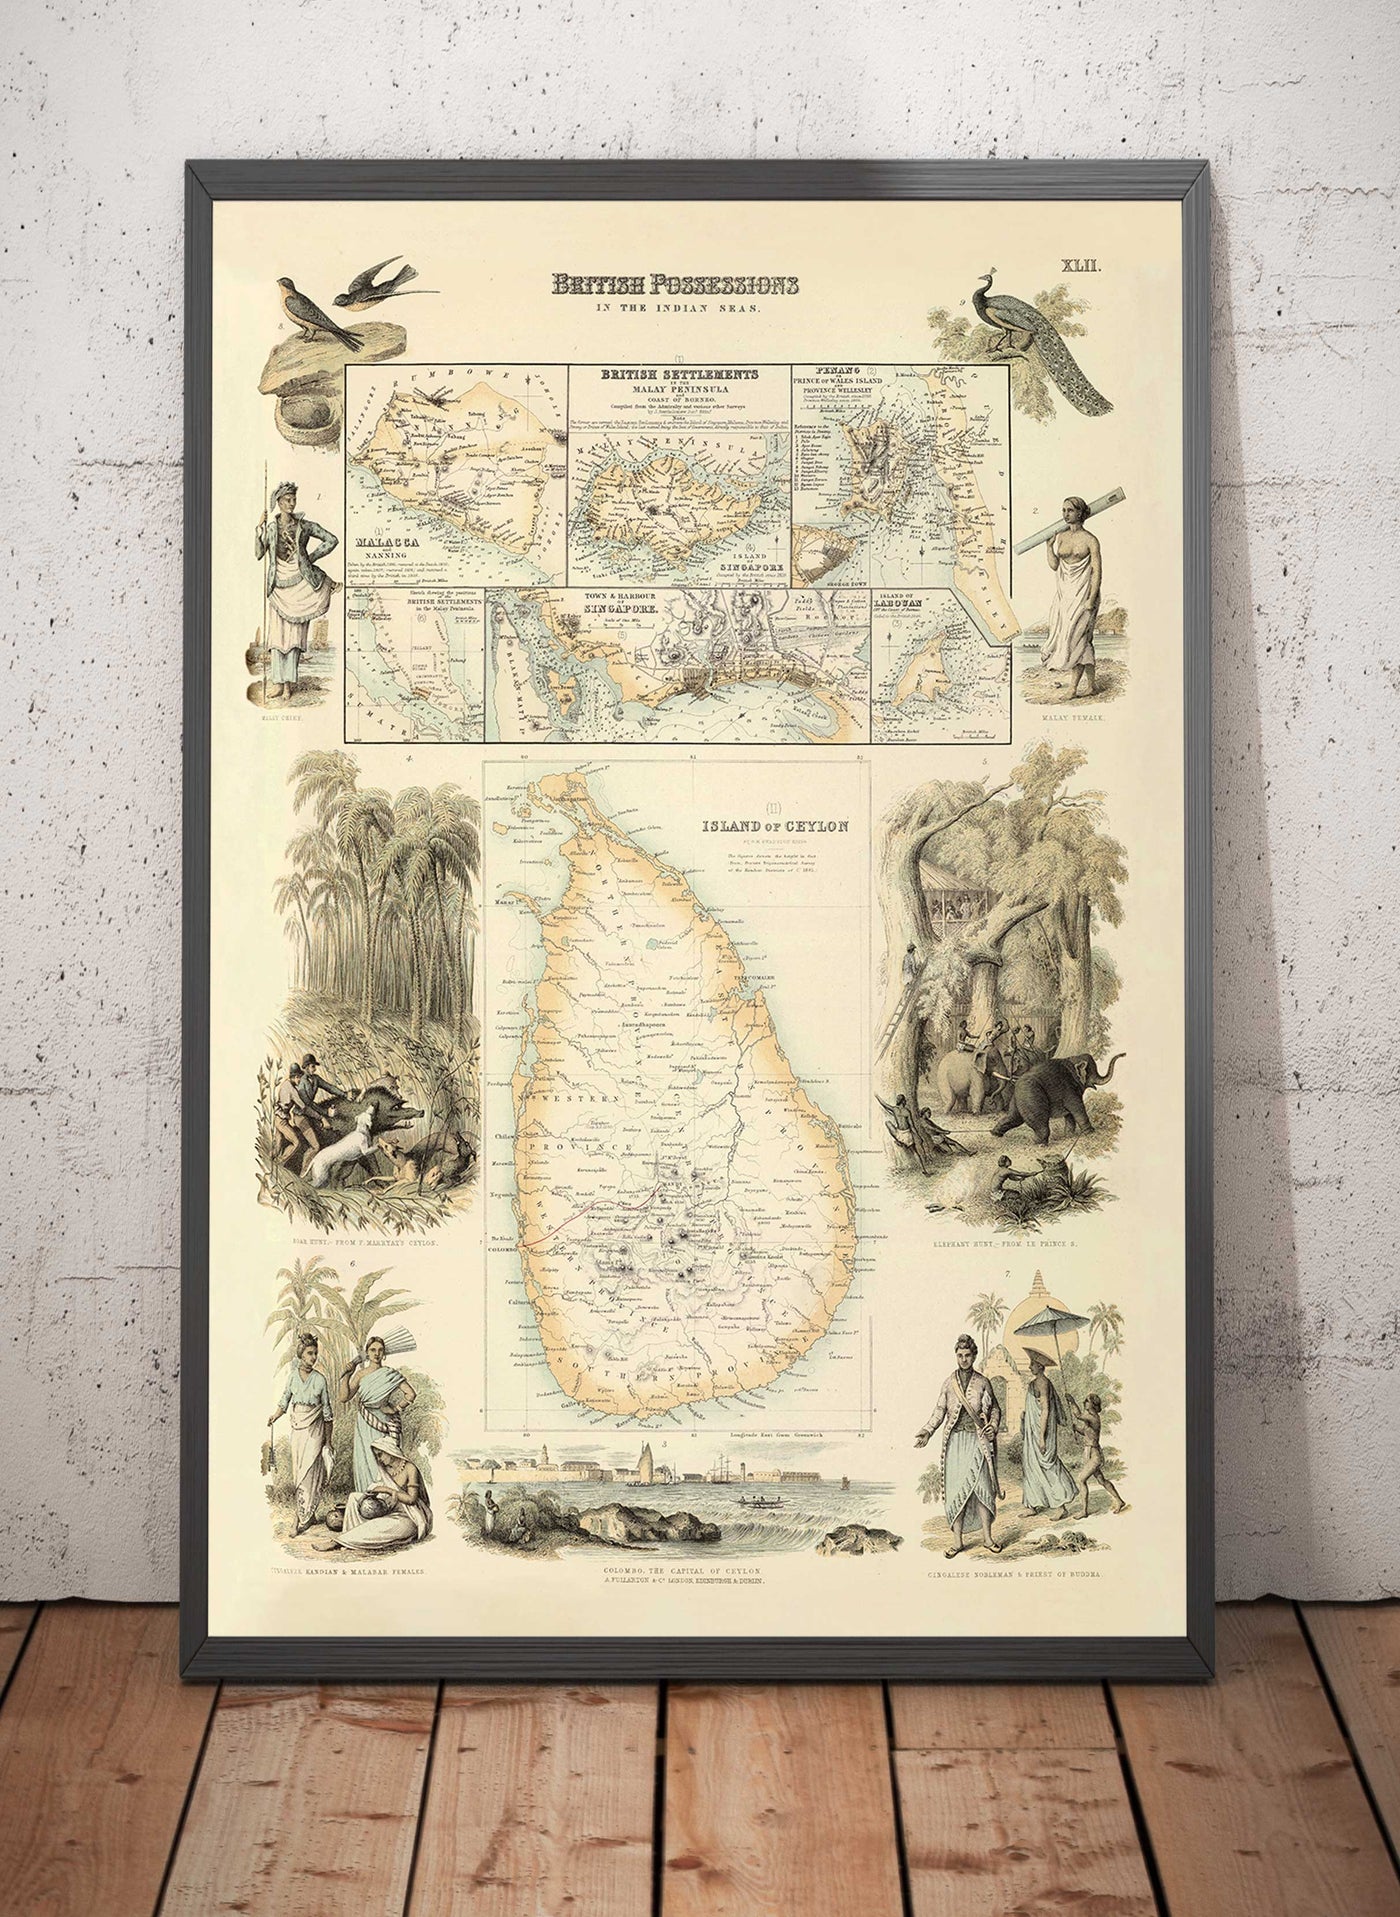 Alte Karte der britischen Besitzungen im Indischen Ozean, 1872 von Fullarton - Malaysia, Penang, Singapur, Sri Lanka, Malakka